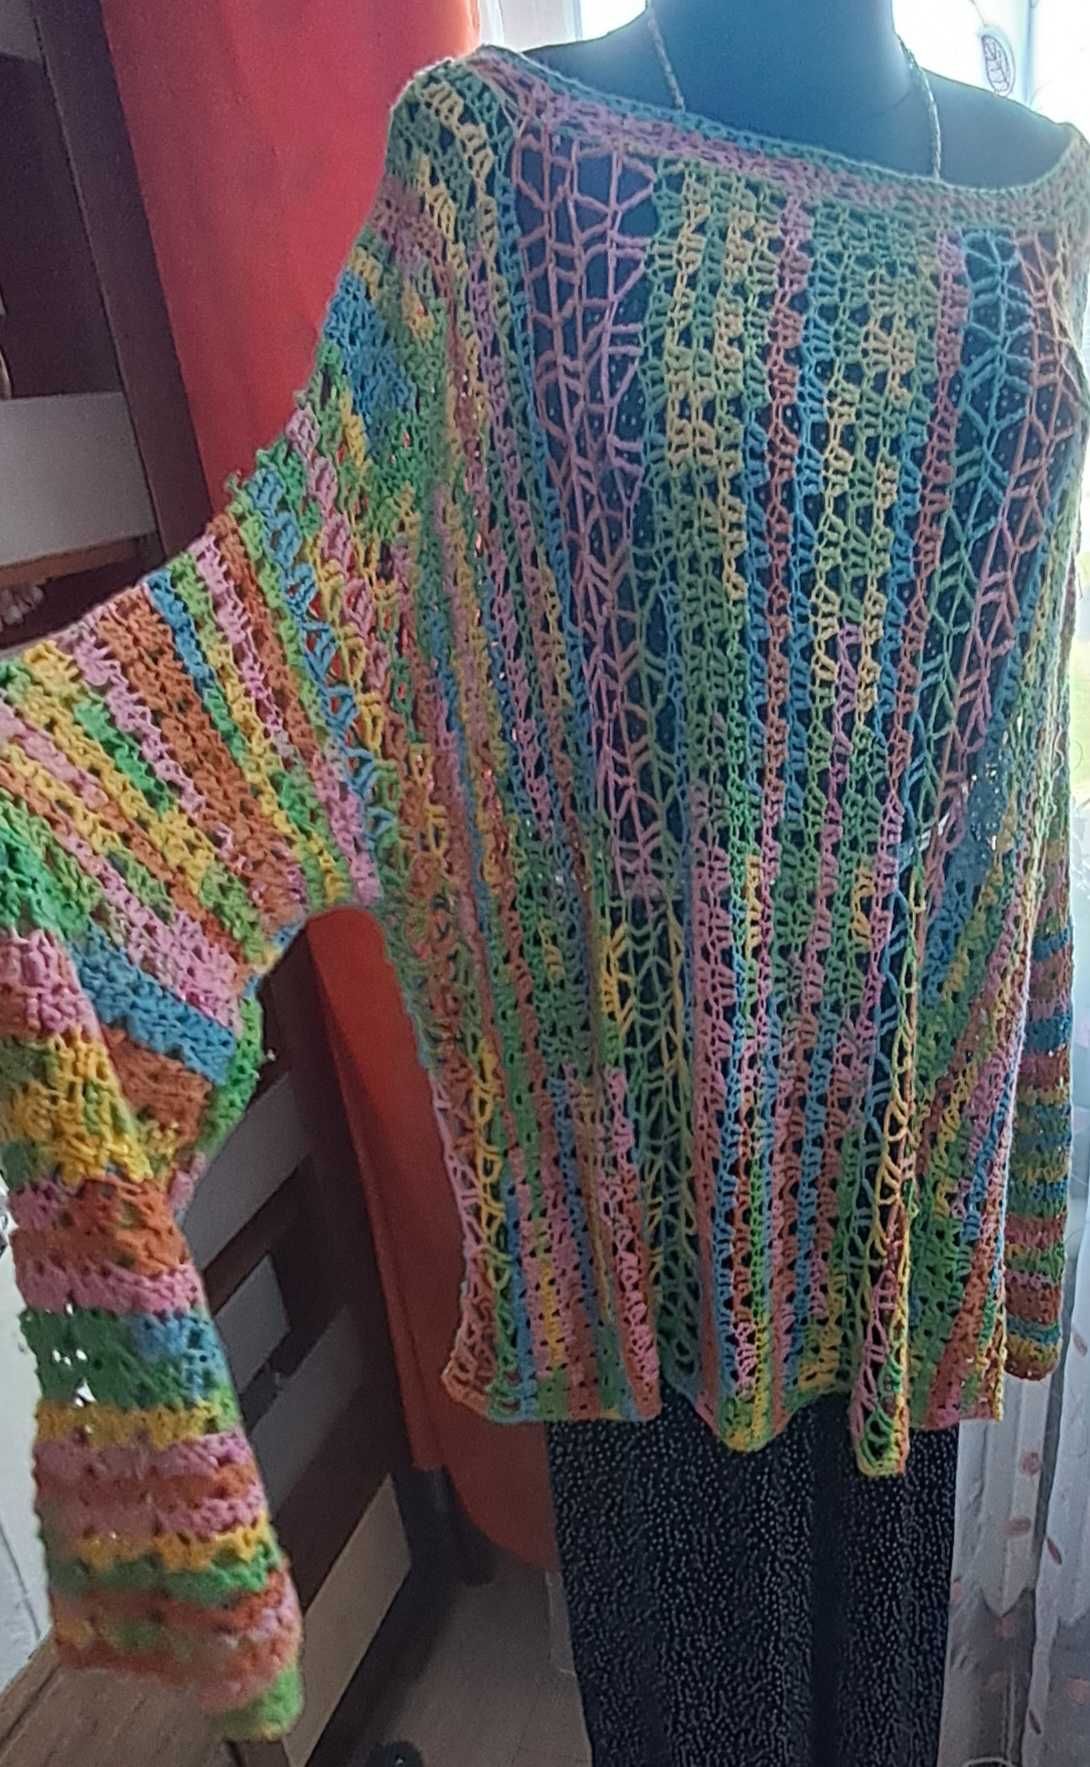 Kolorowy sweterek azurowy rozmiar 7-8xl lub uniwersalny